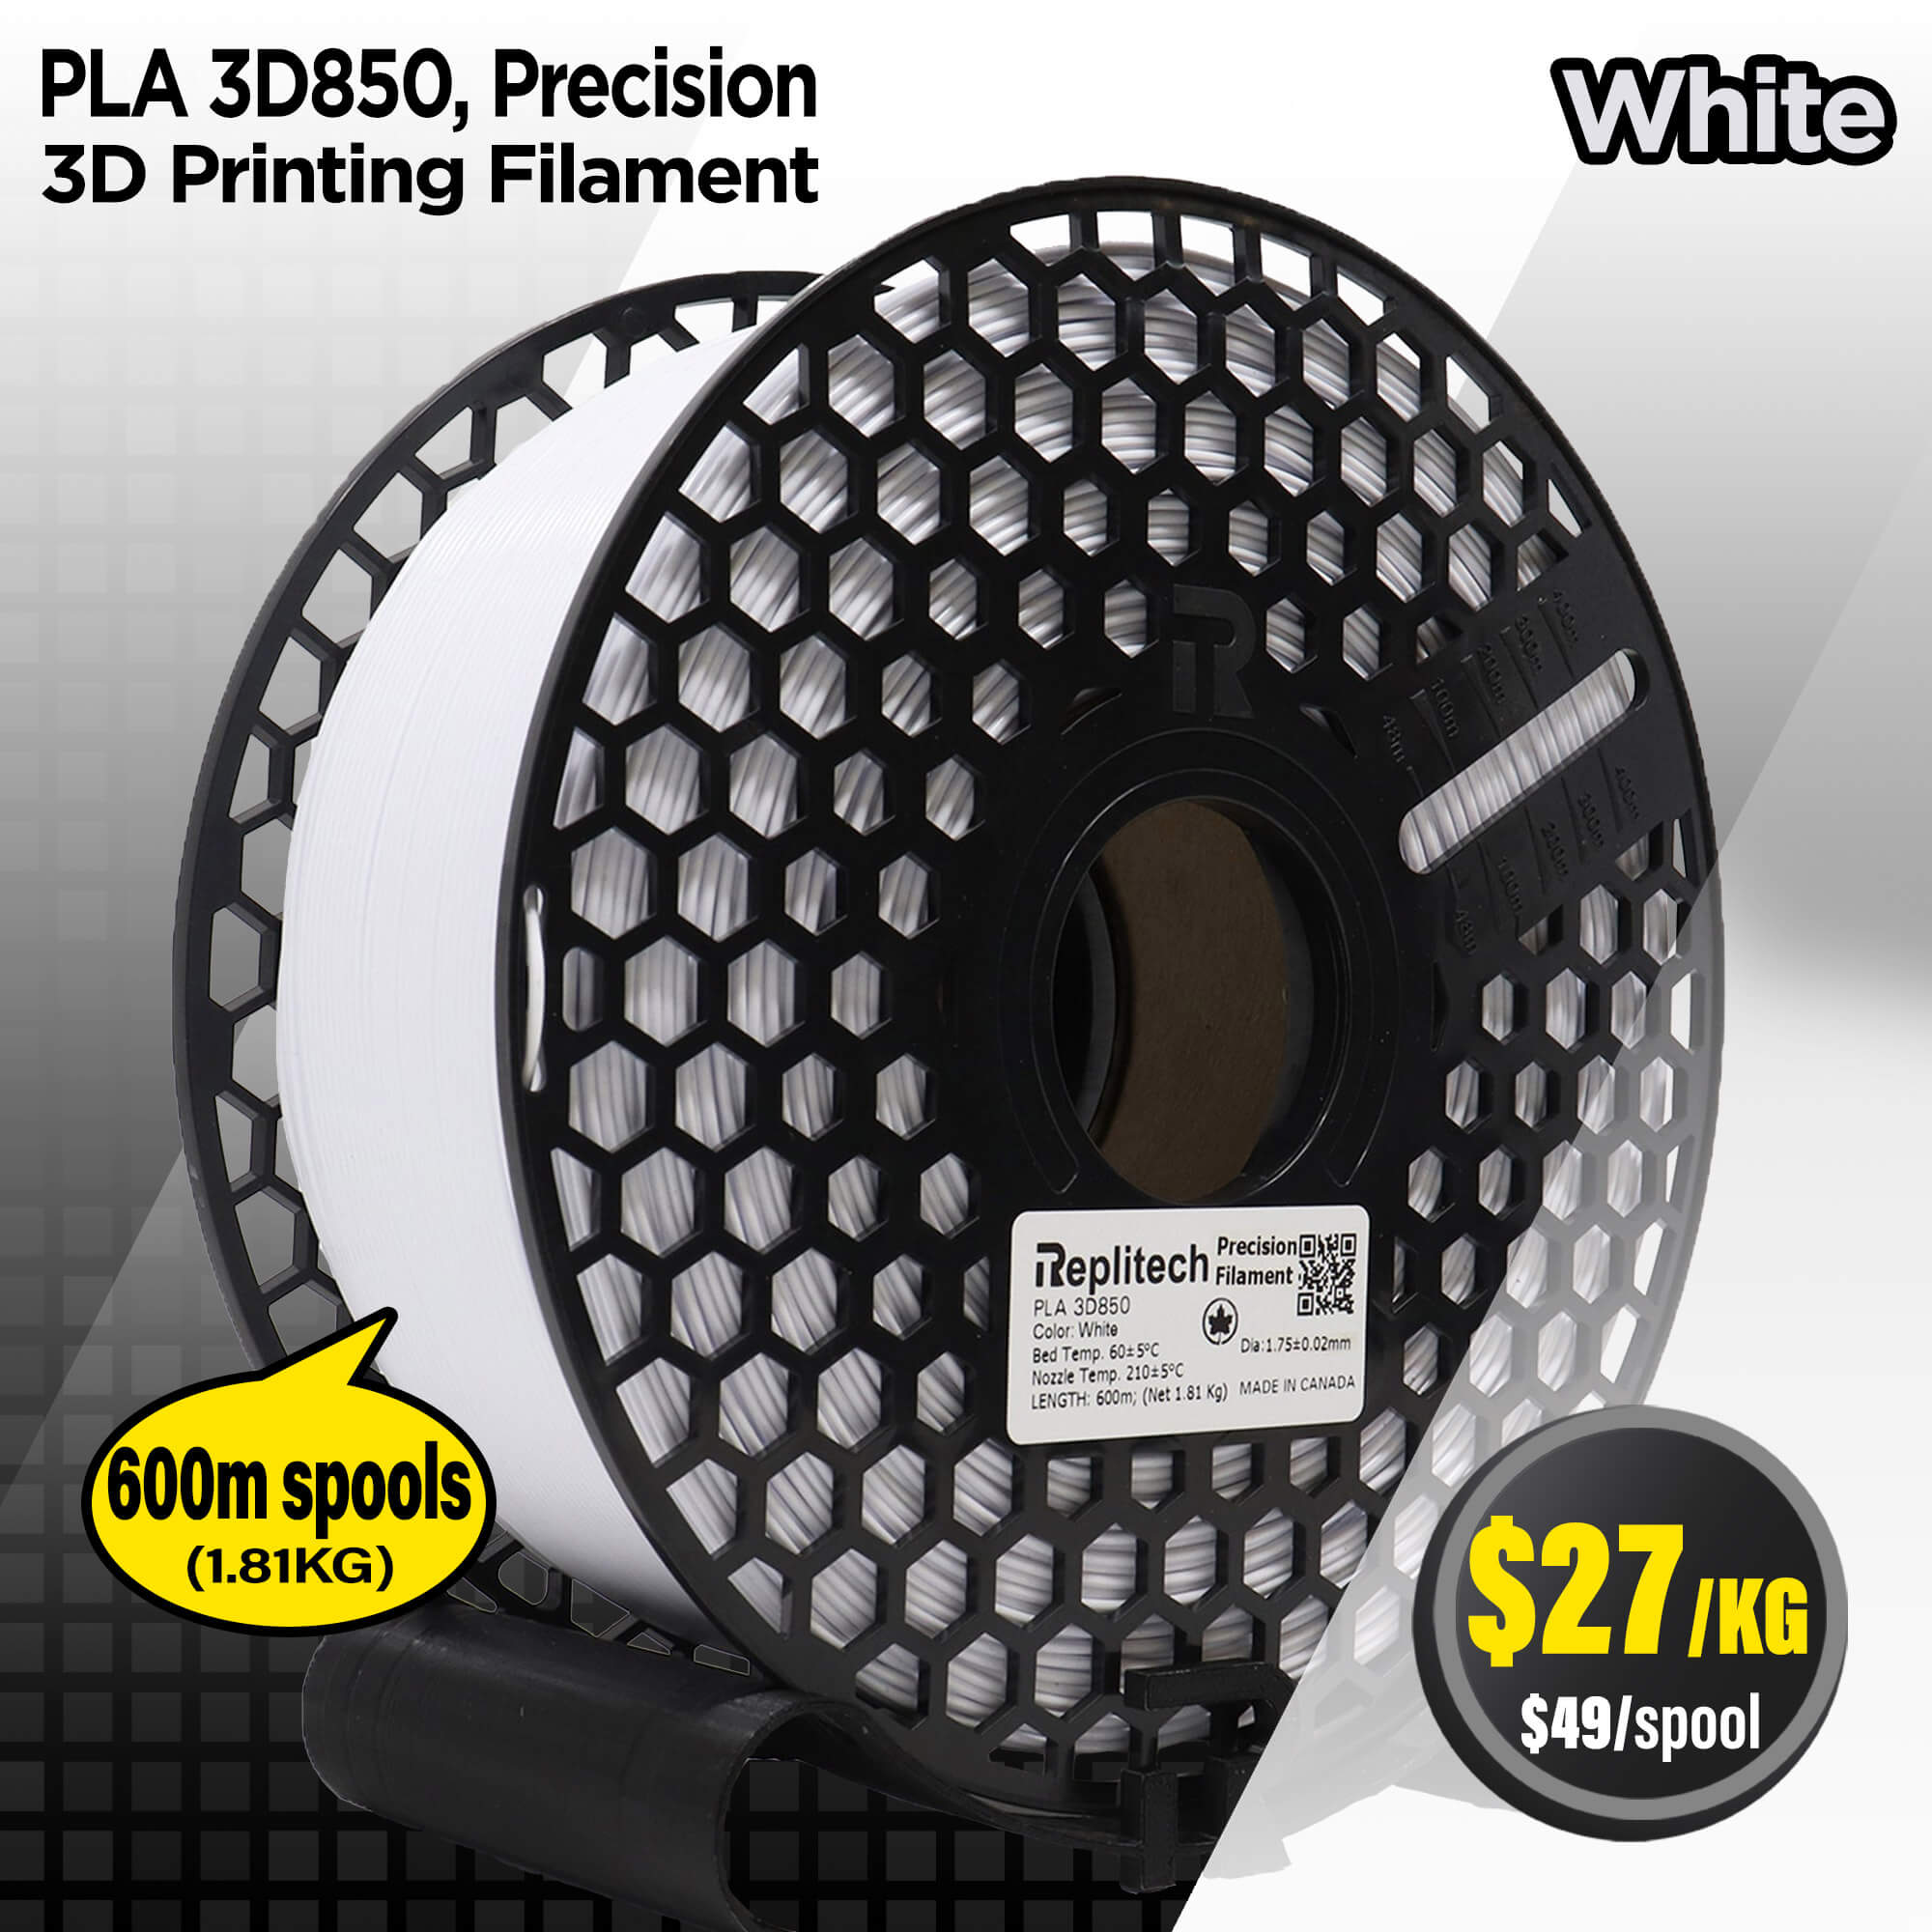 PLA 3D850 Precision White